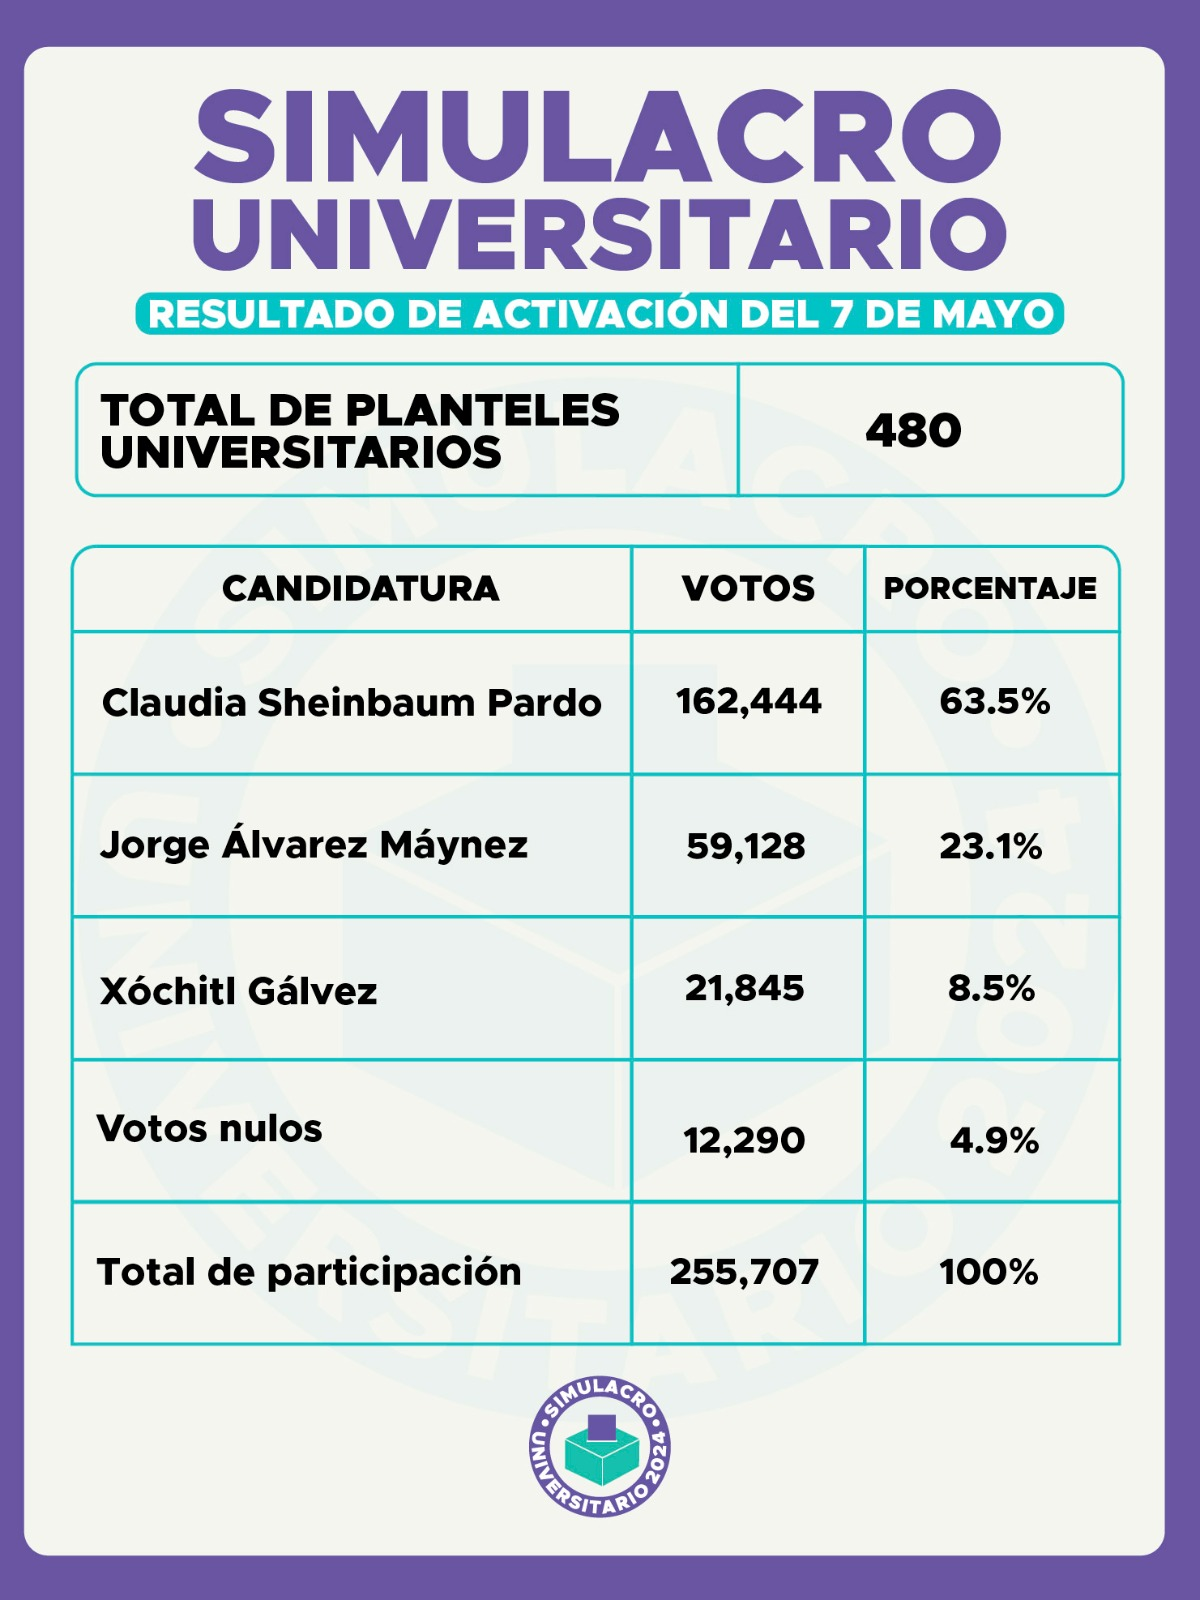 En el Simulacro Mx, Máynez dobla los votos en Gálvez: Guevara